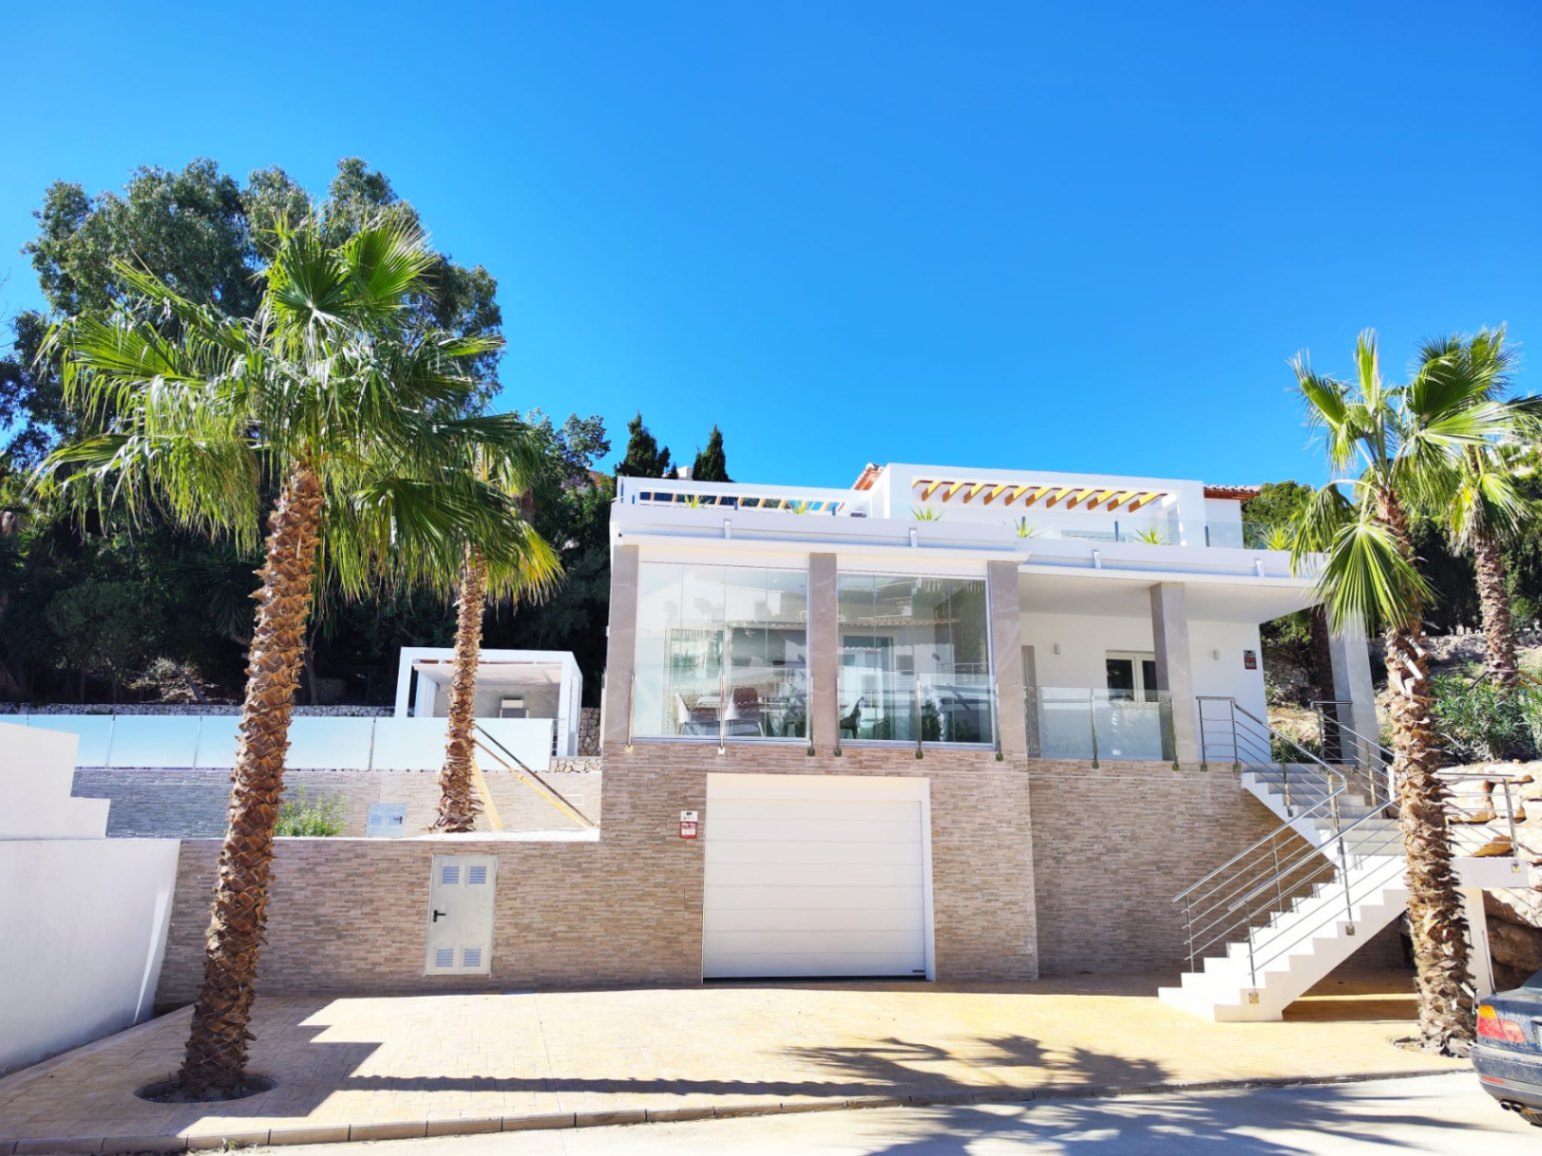 Villa te koop in Moraira met uitzicht op zee